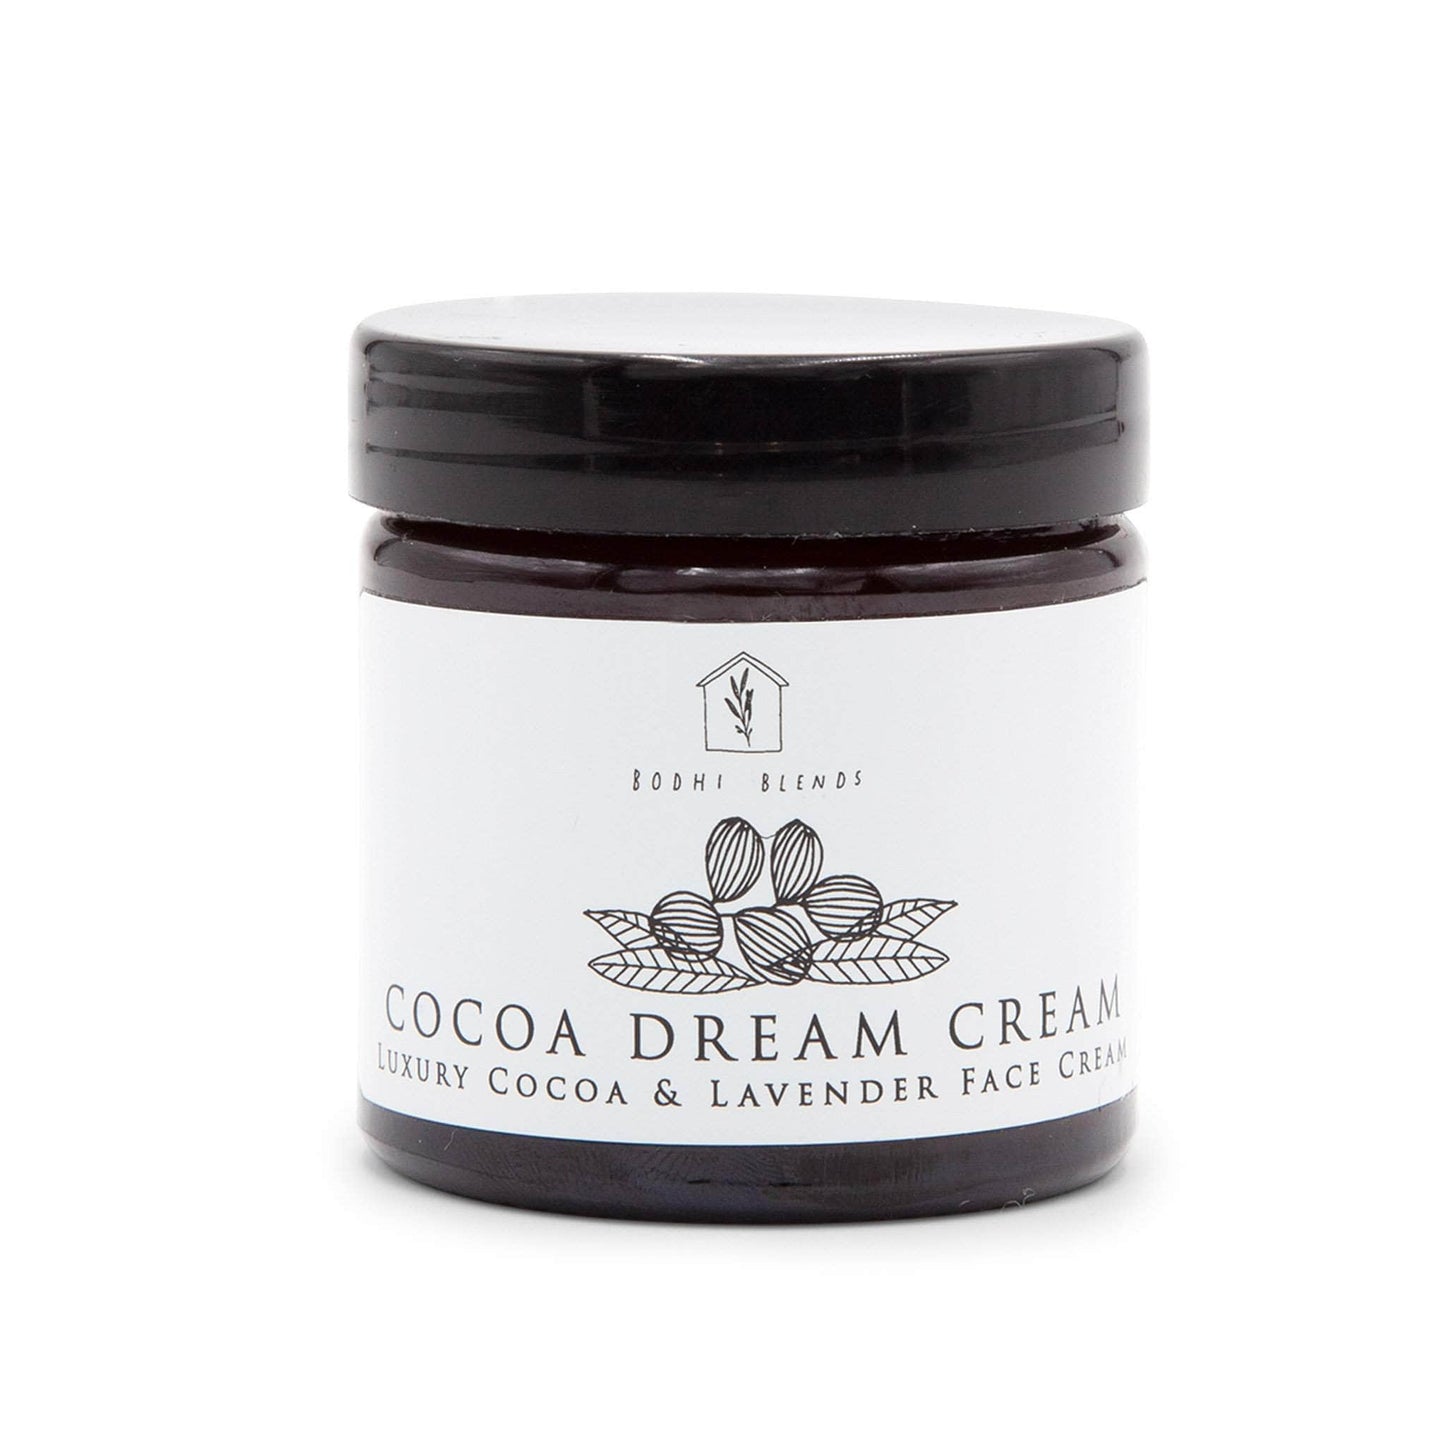 Bodhi Blends Skincare Bodhi Blends Cocoa Dream Cream Cocoa & Lavender Luxury Face Cream